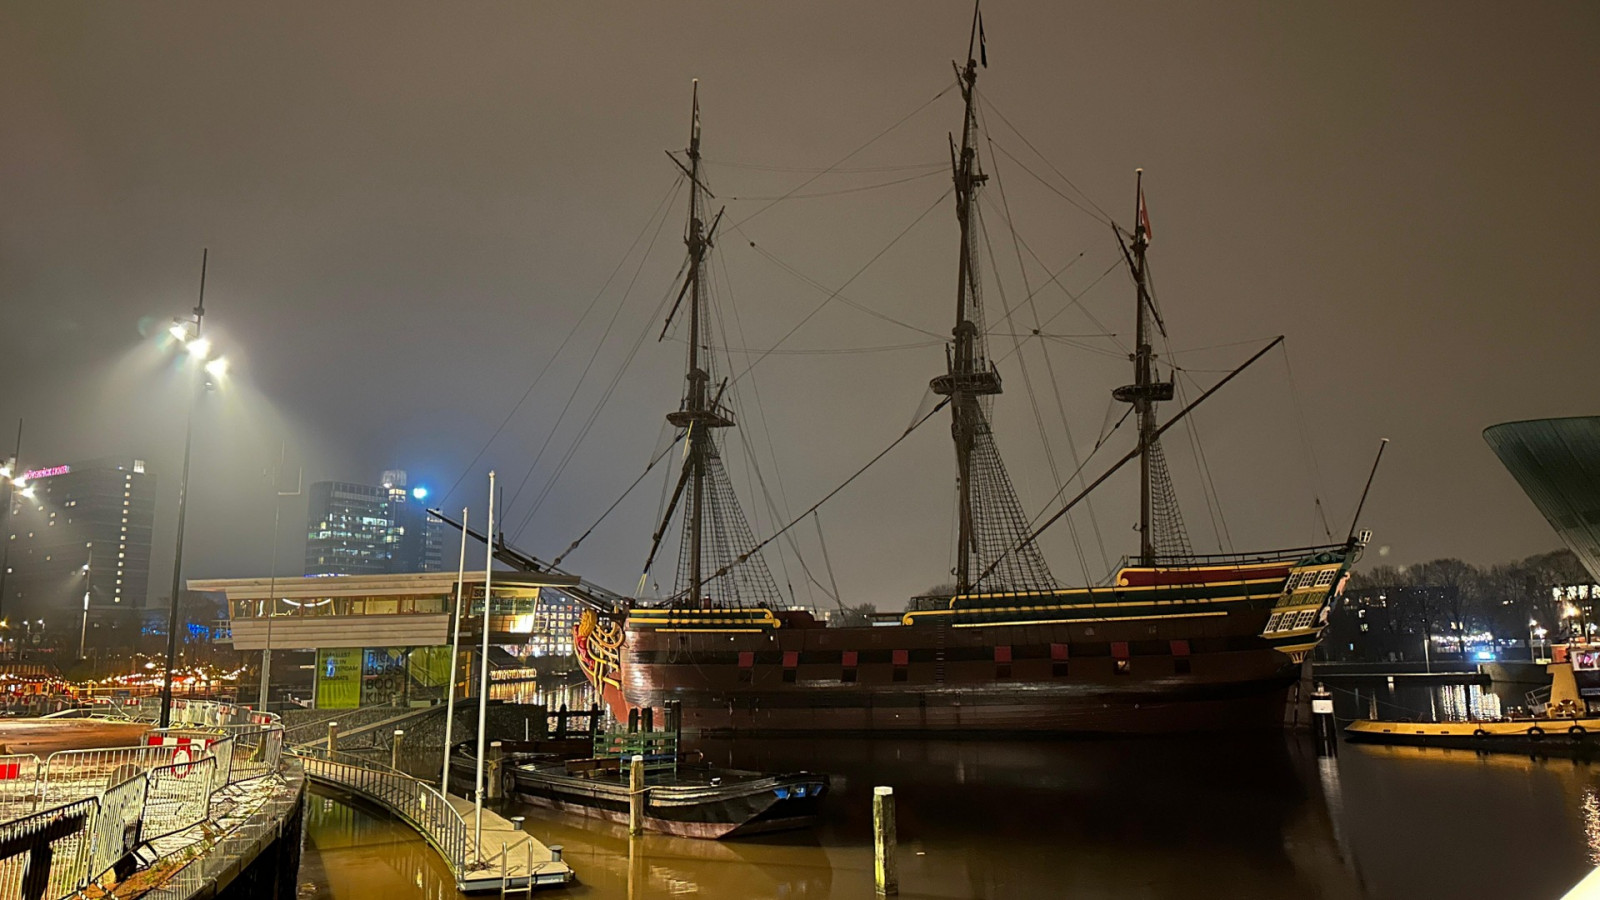 Scheepvaartmuseum even zonder VOC-schip